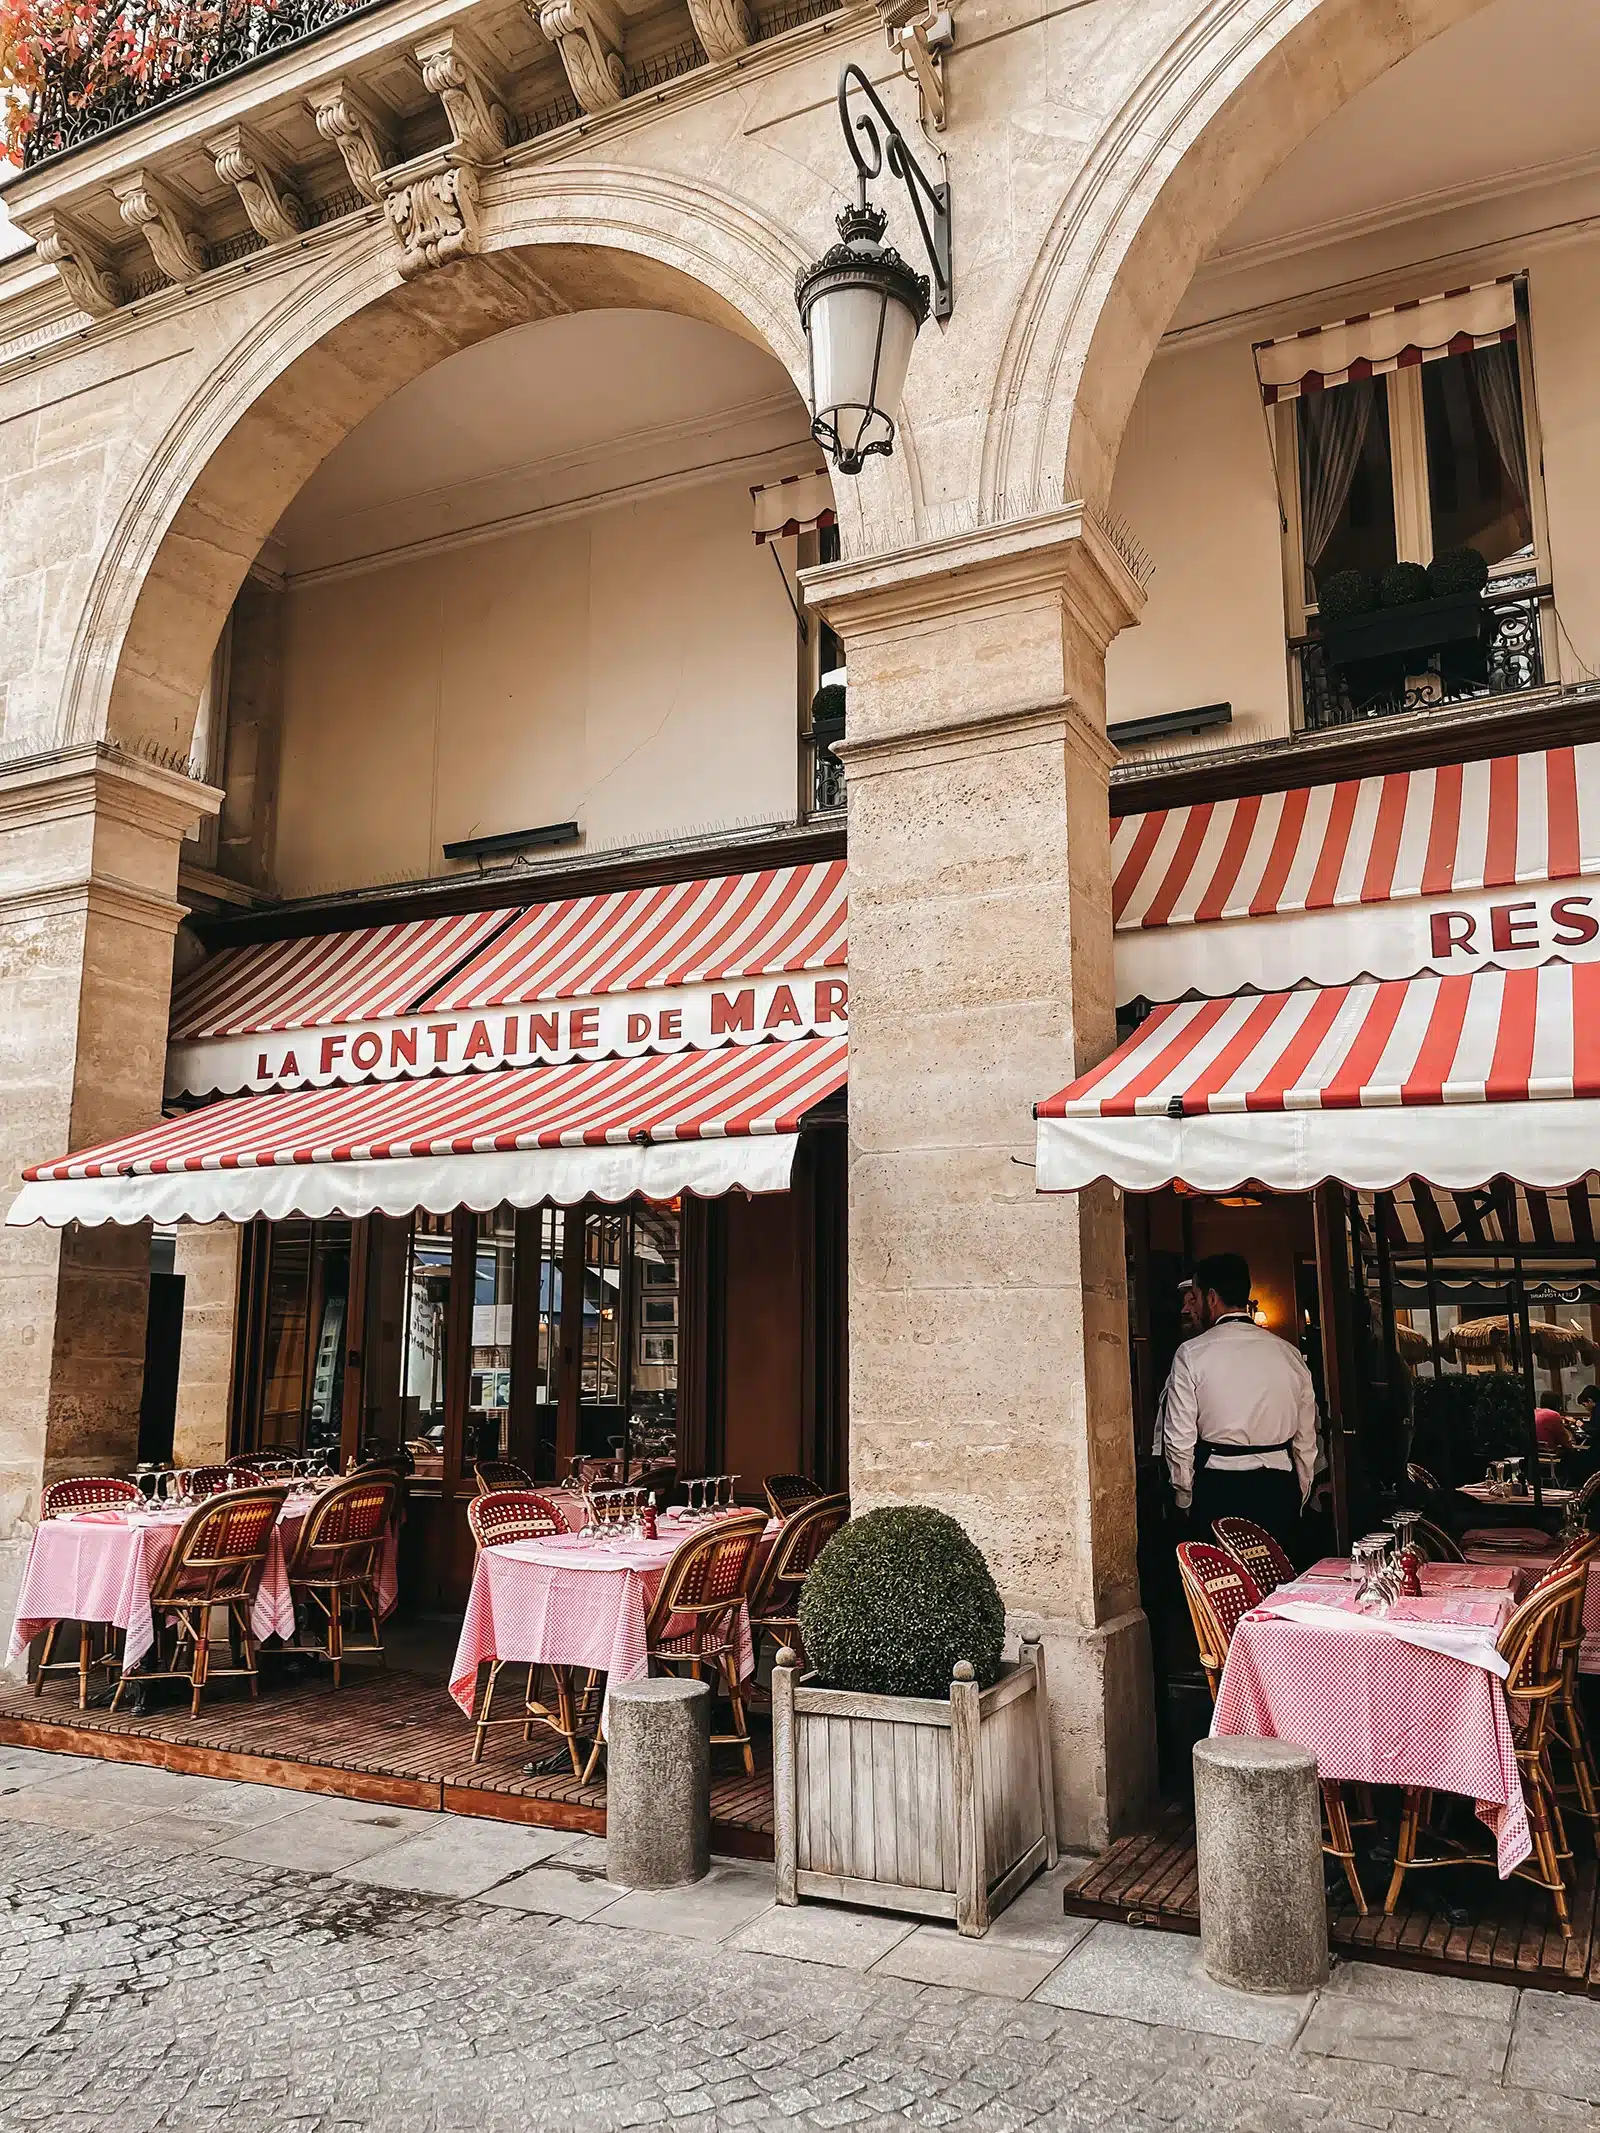 Cafe near Eiffel Tower